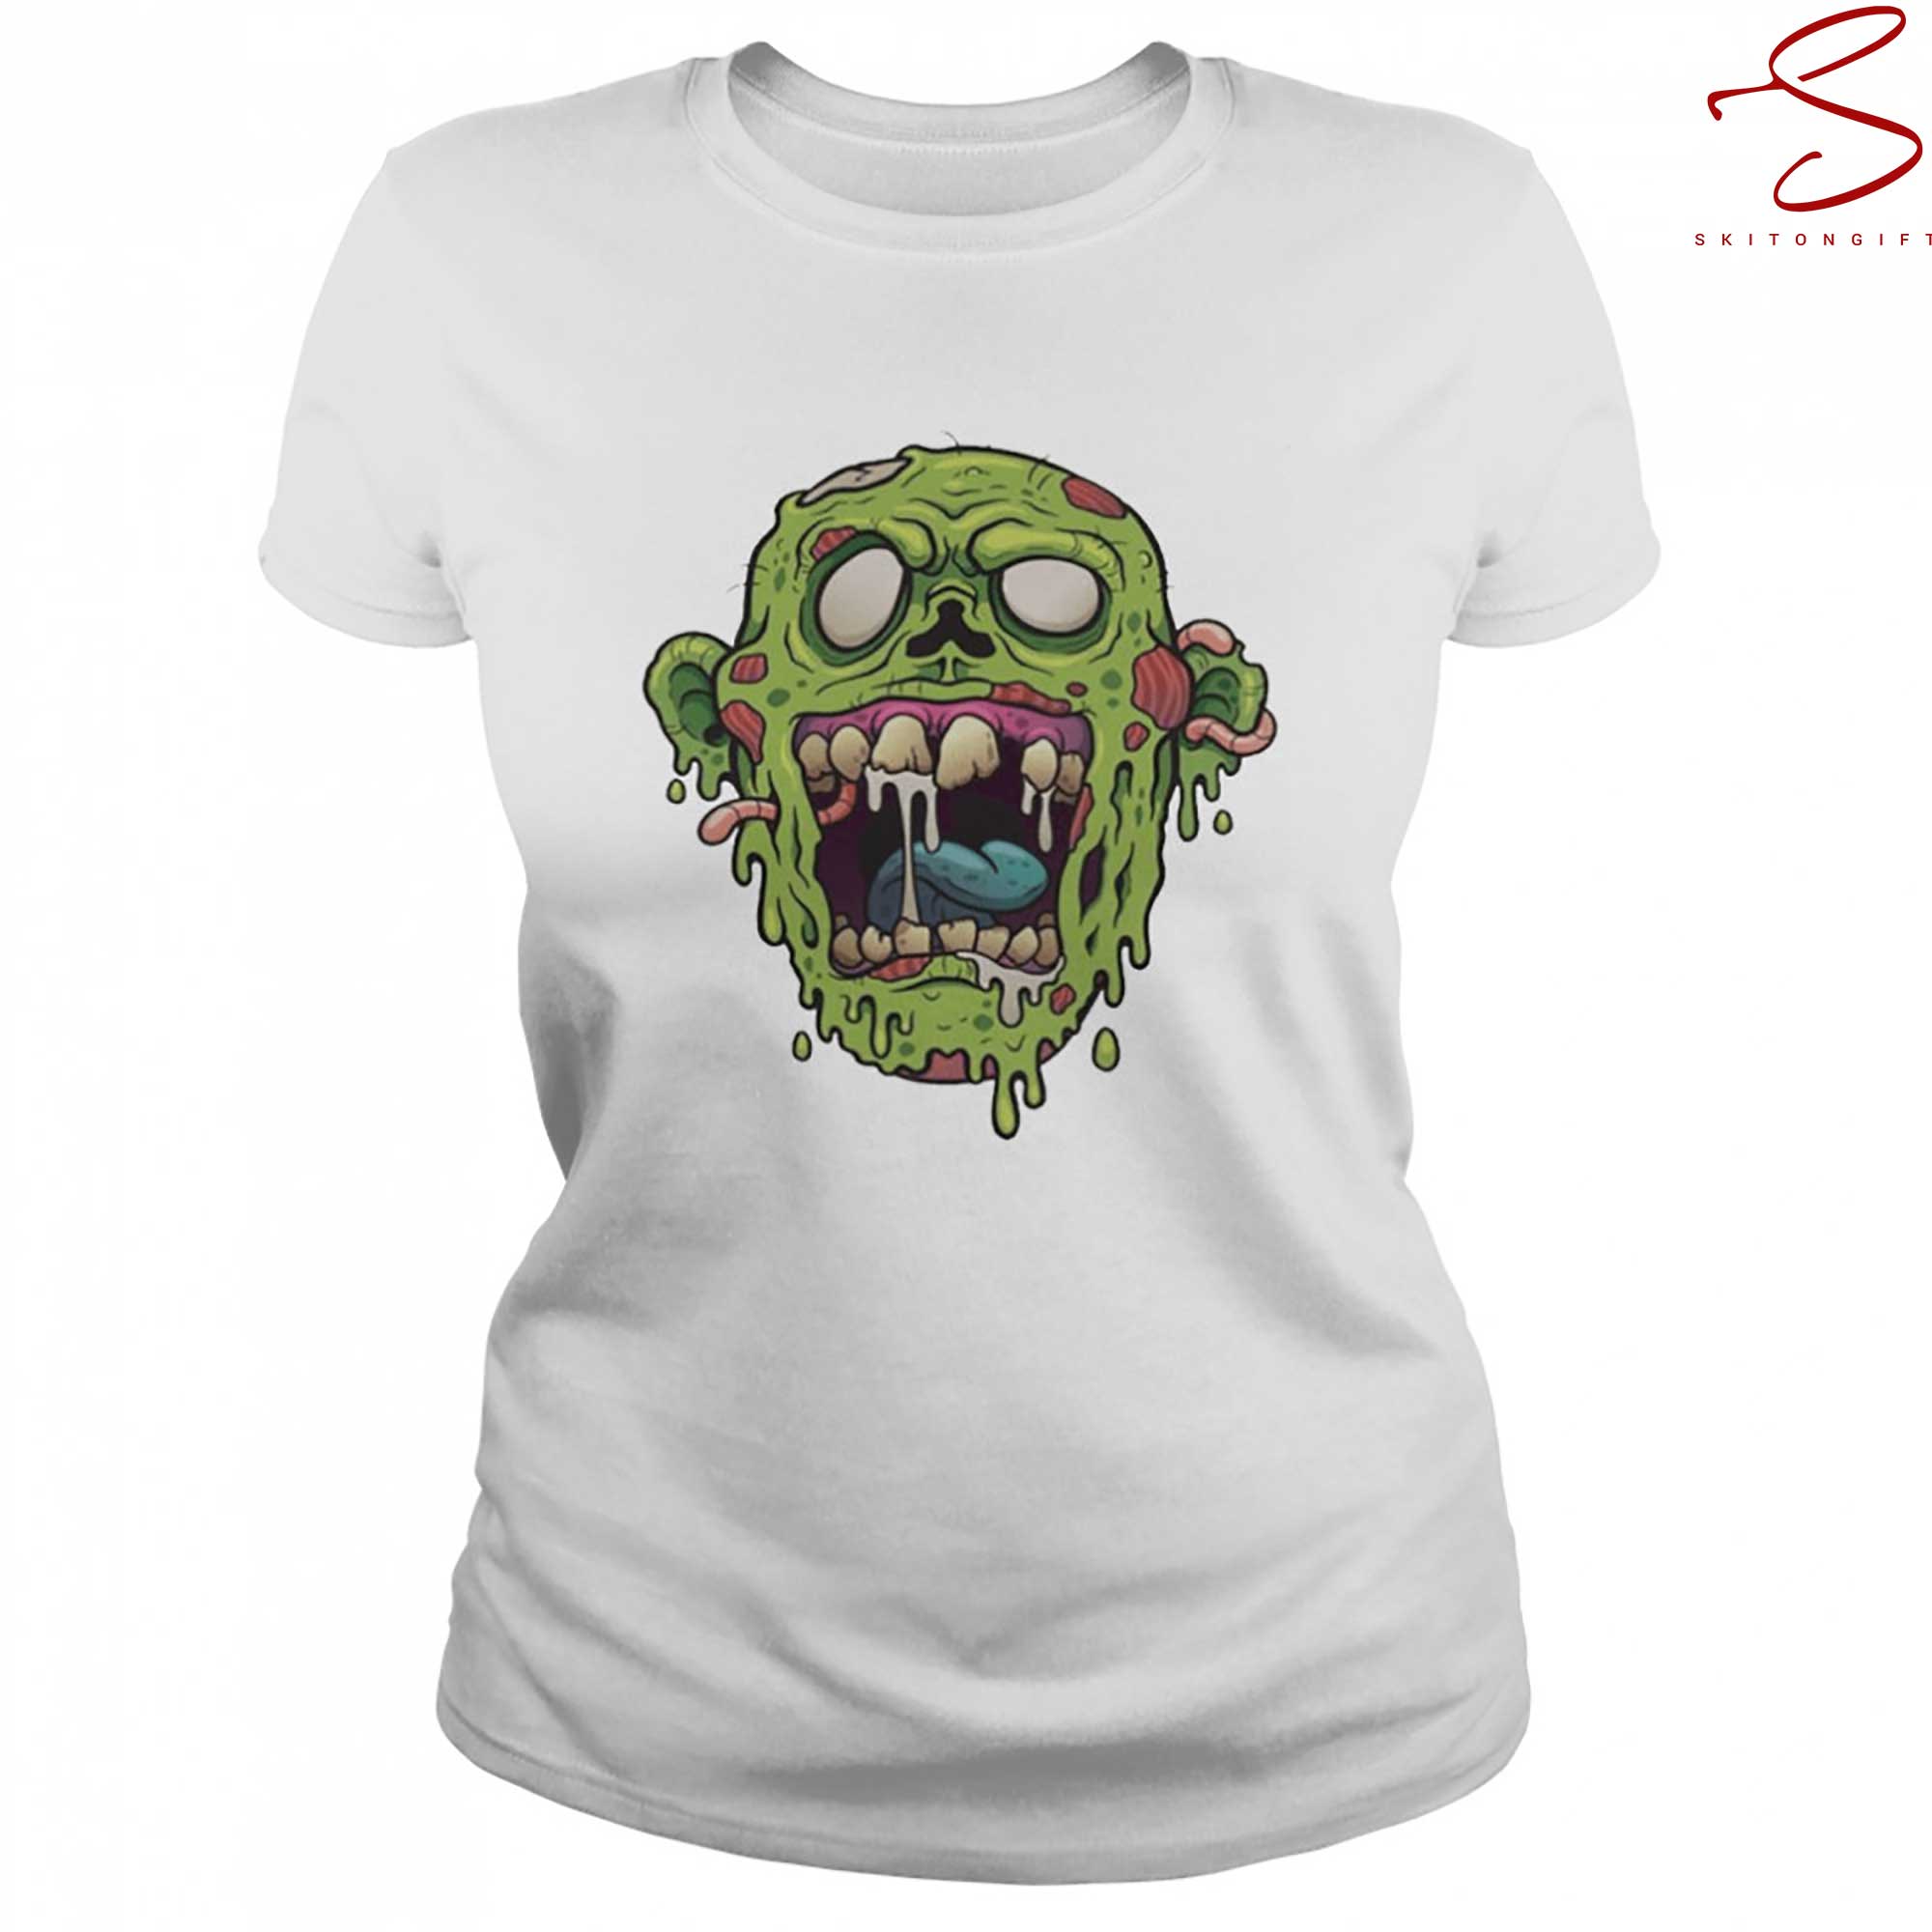 Skitongift Zombie Face Halloween T Shirt